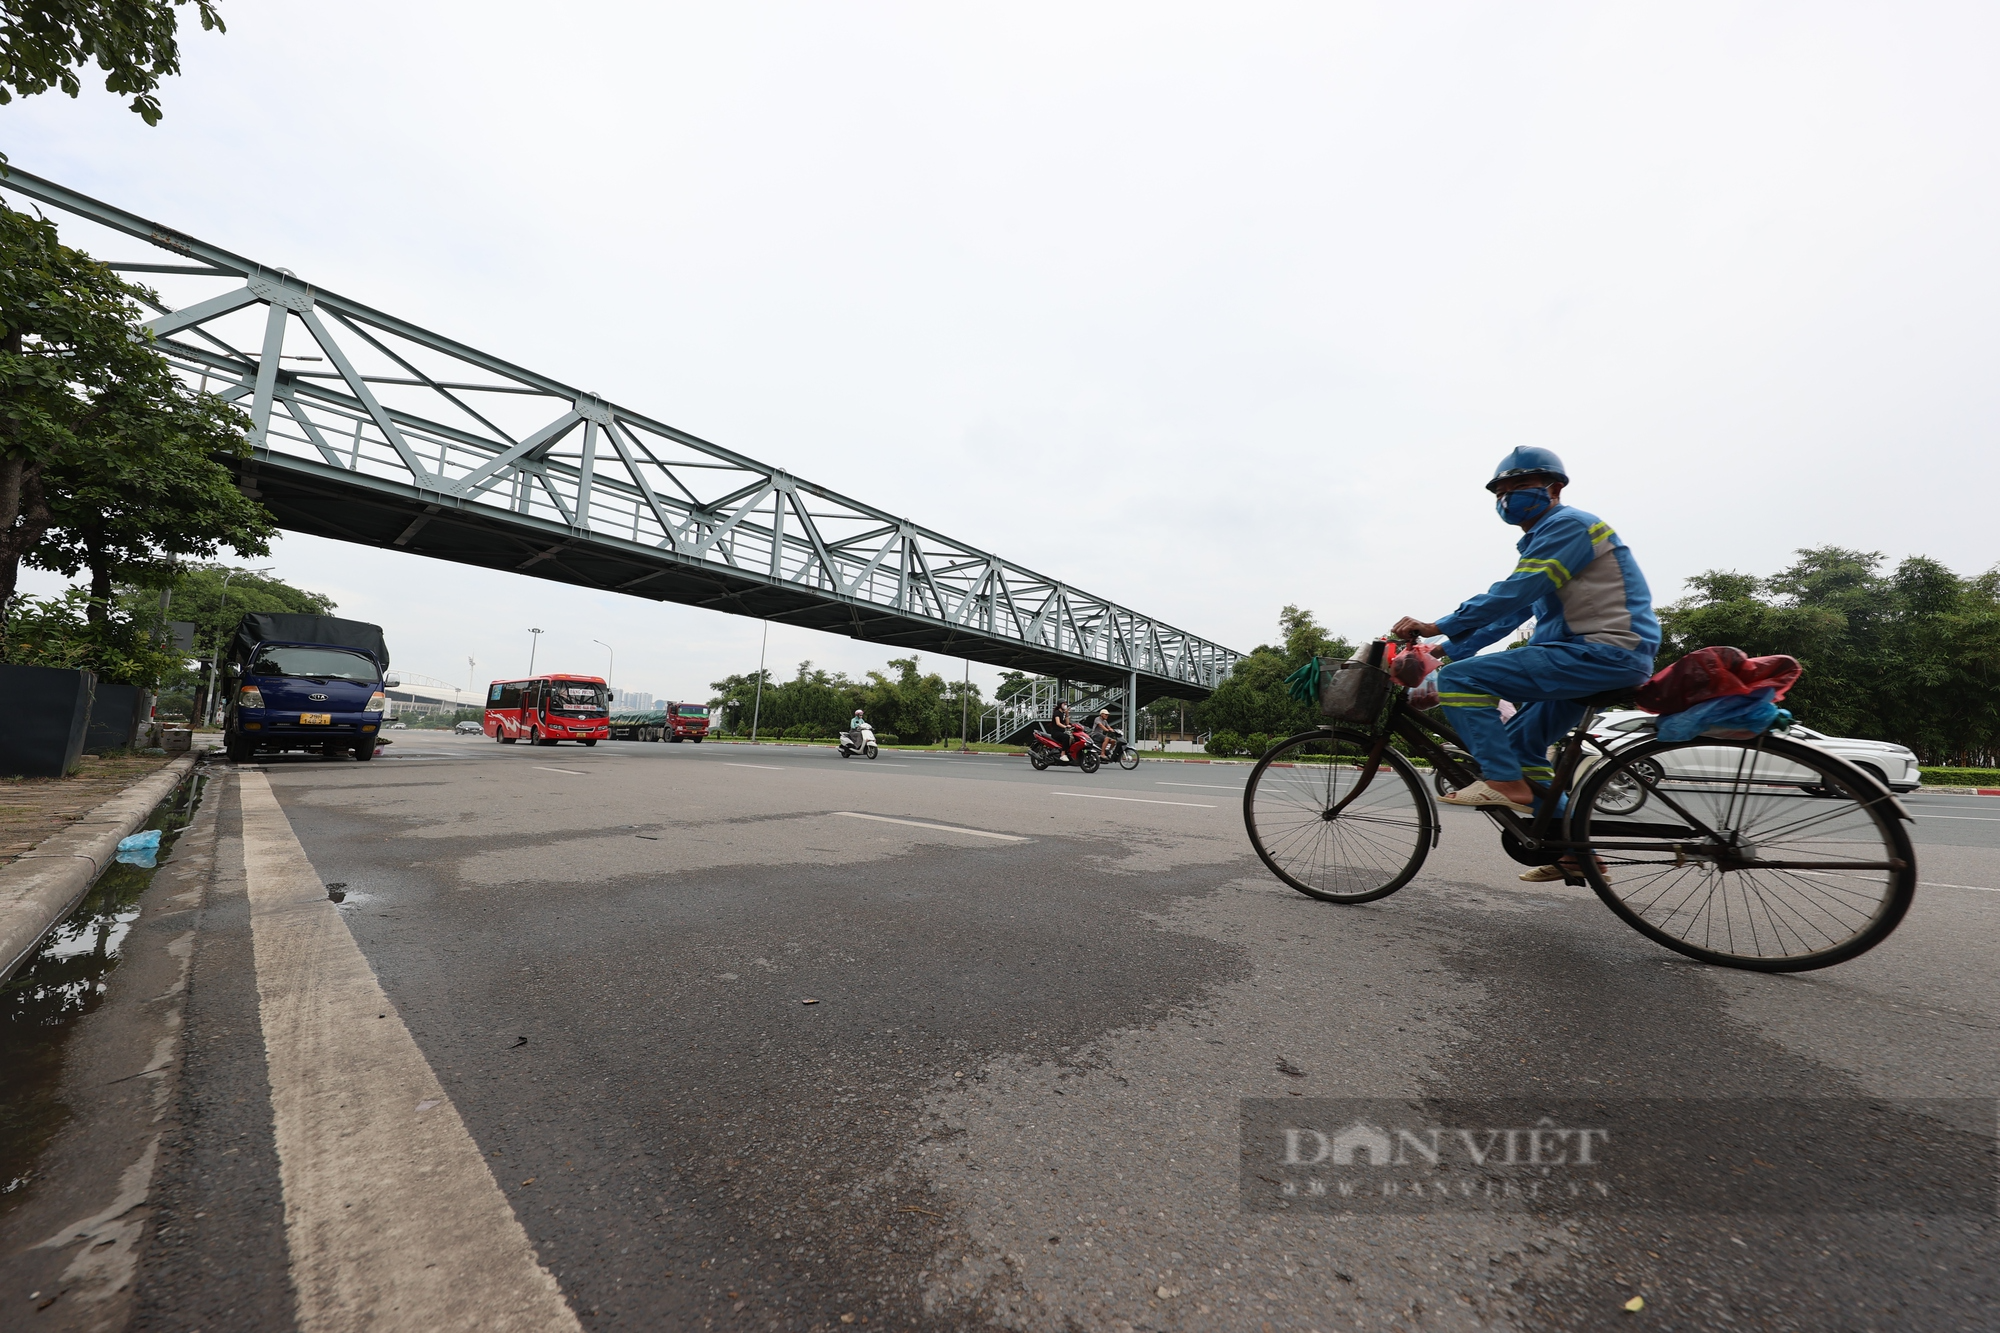 Cầu vượt ở Hà Nội cả ngày có vài người qua lại, rác và nước mưa thì lênh láng - Ảnh 1.